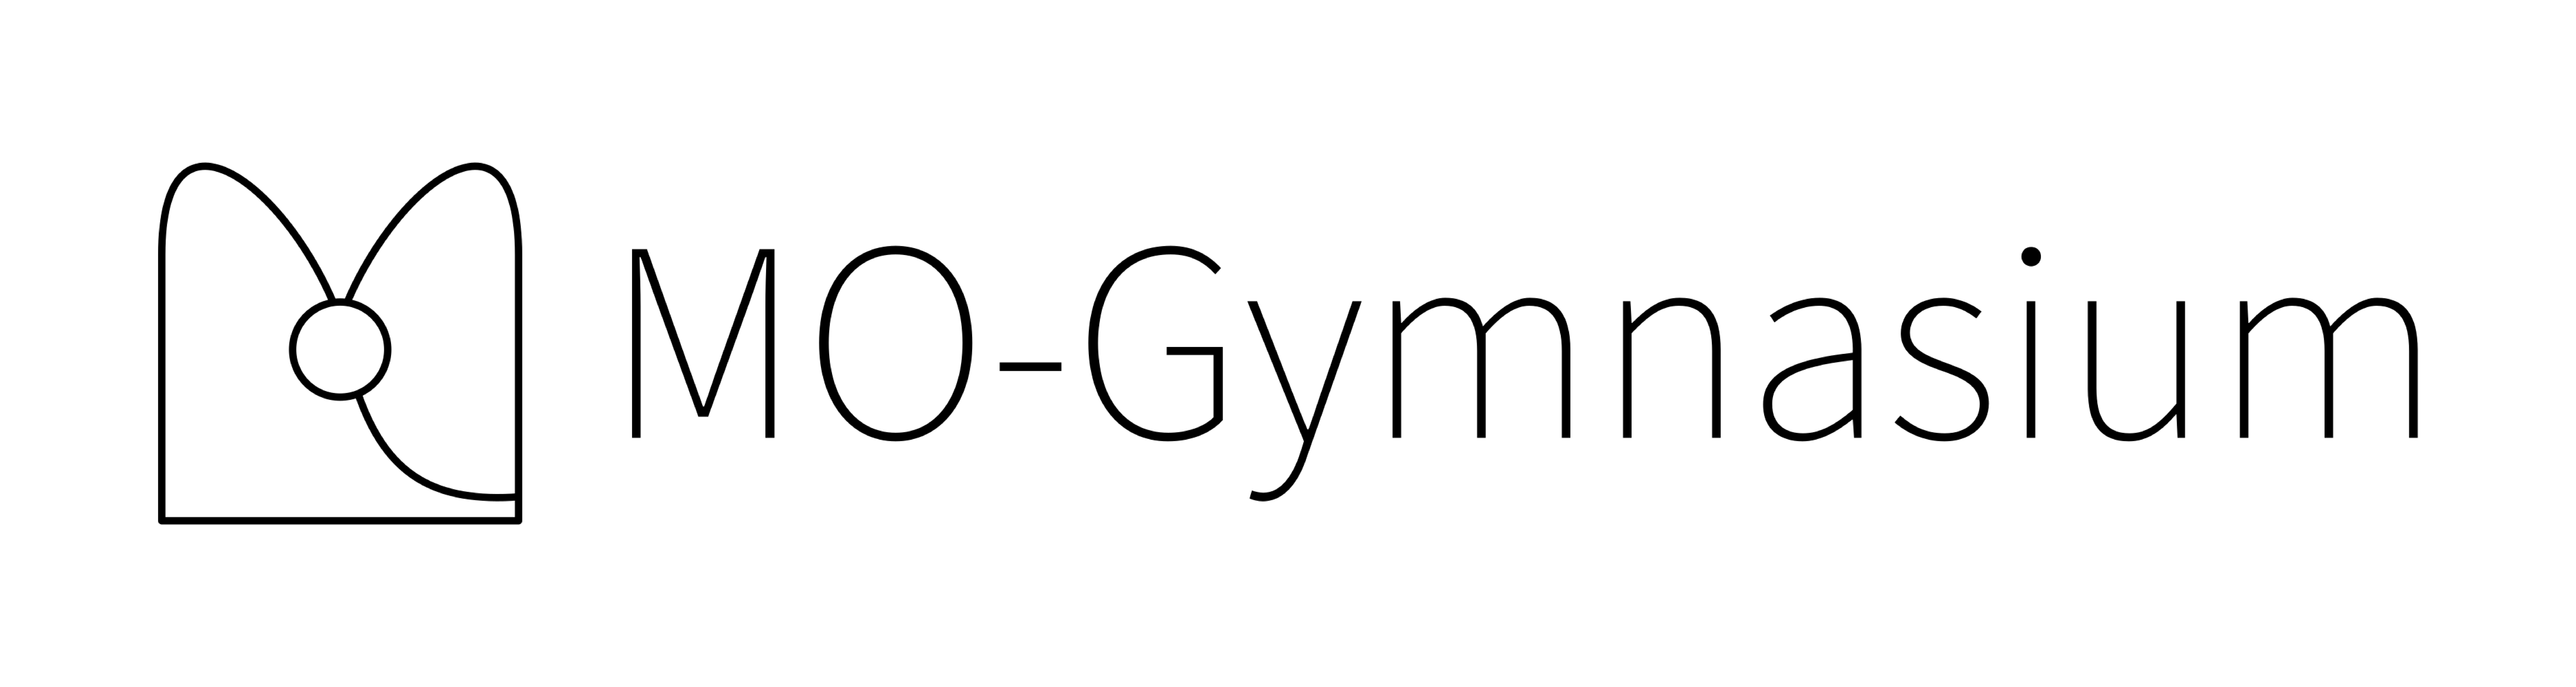 MO-Gymnasium-text_small.png